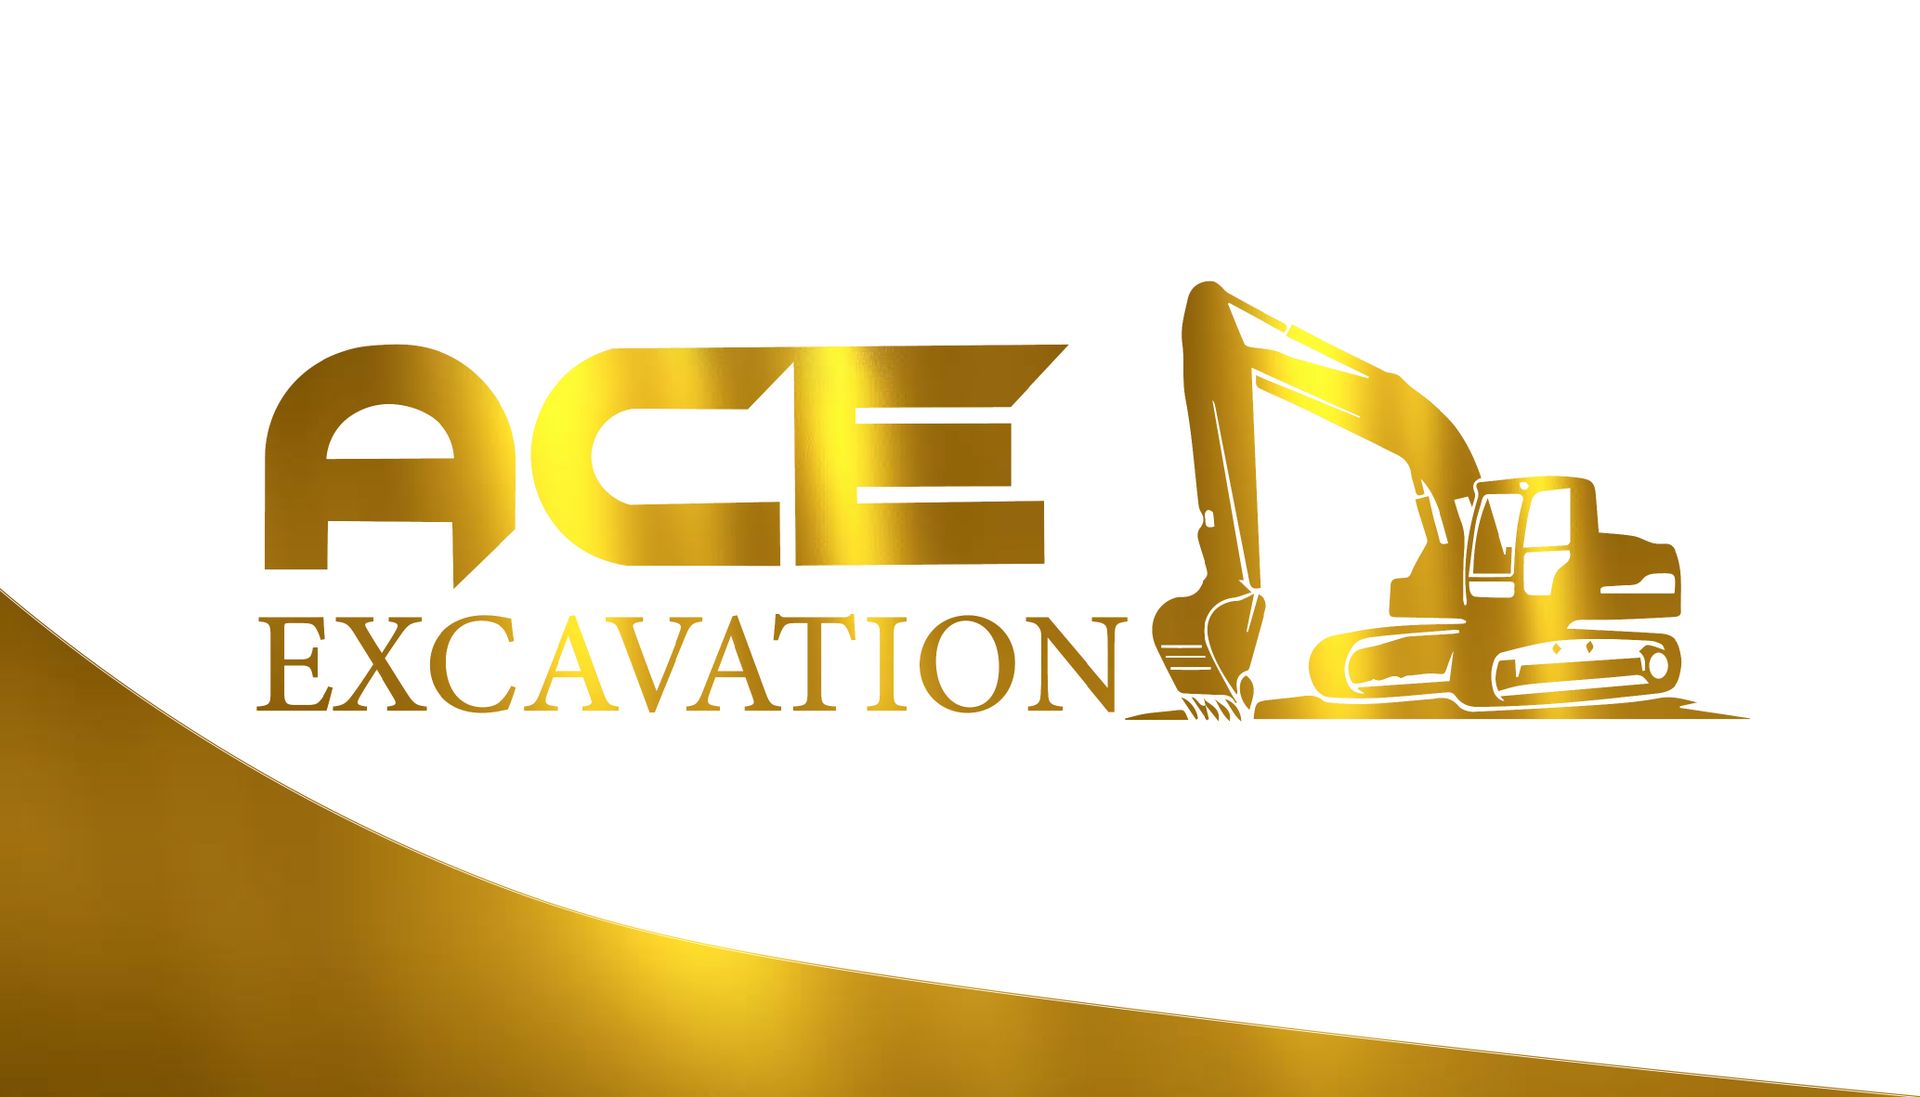 Un logo pour l'excavation d'as avec une excavatrice d'or sur fond blanc.